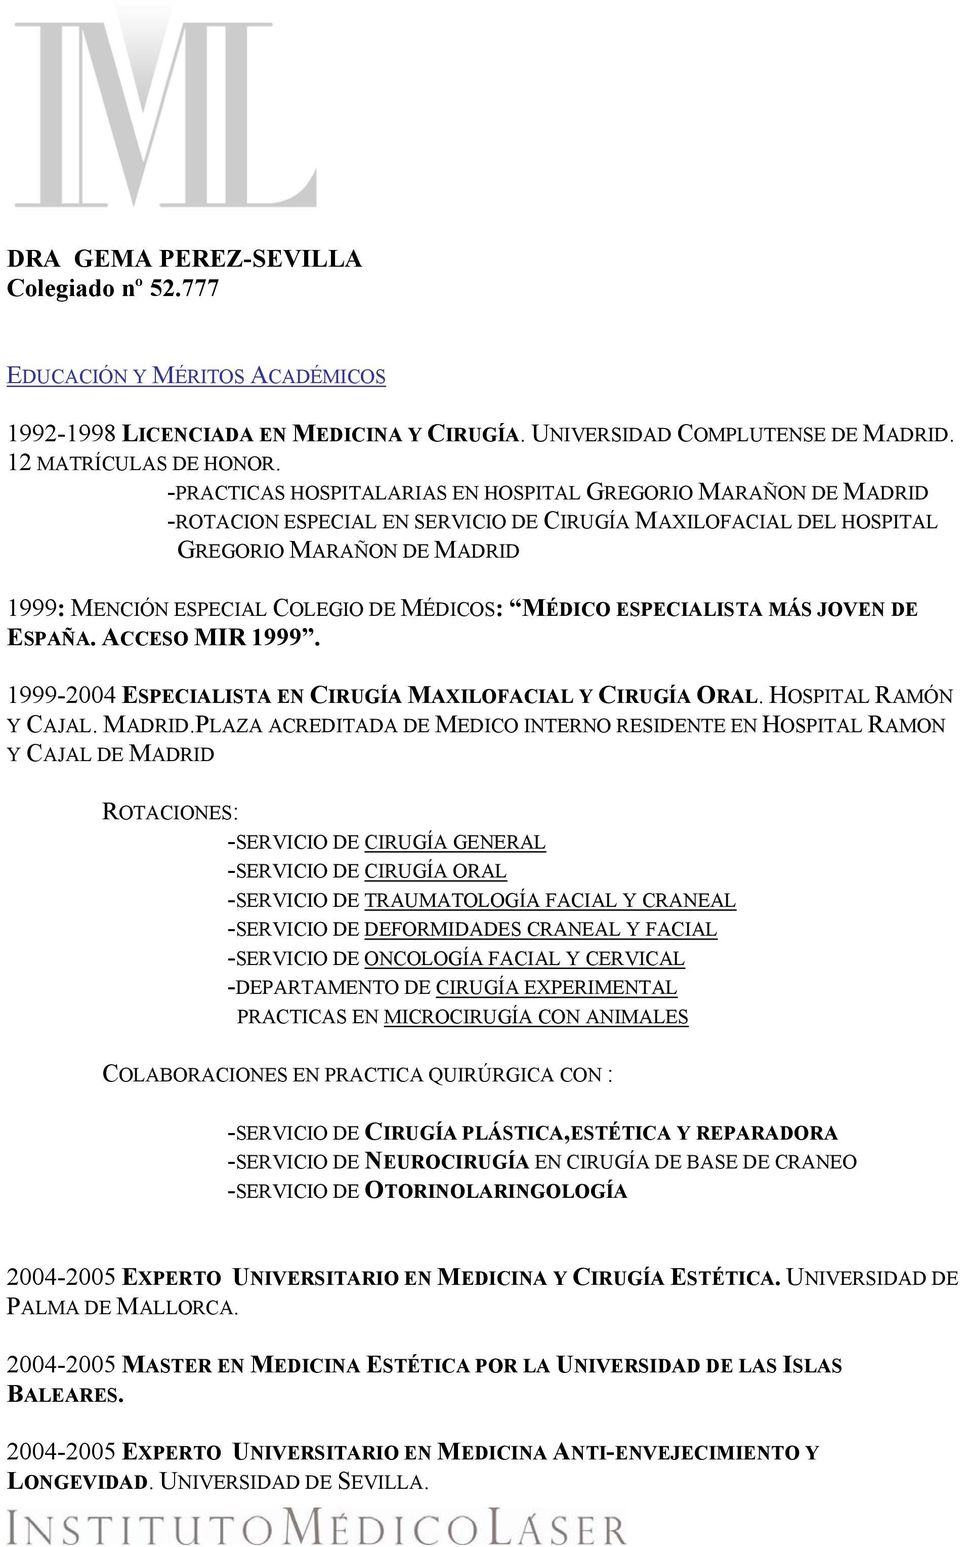 MÉDICOS: MÉDICO ESPECIALISTA MÁS JOVEN DE ESPAÑA. ACCESO MIR 1999. 1999-2004 ESPECIALISTA EN CIRUGÍA MAXILOFACIAL Y CIRUGÍA ORAL. HOSPITAL RAMÓN Y CAJAL. MADRID.